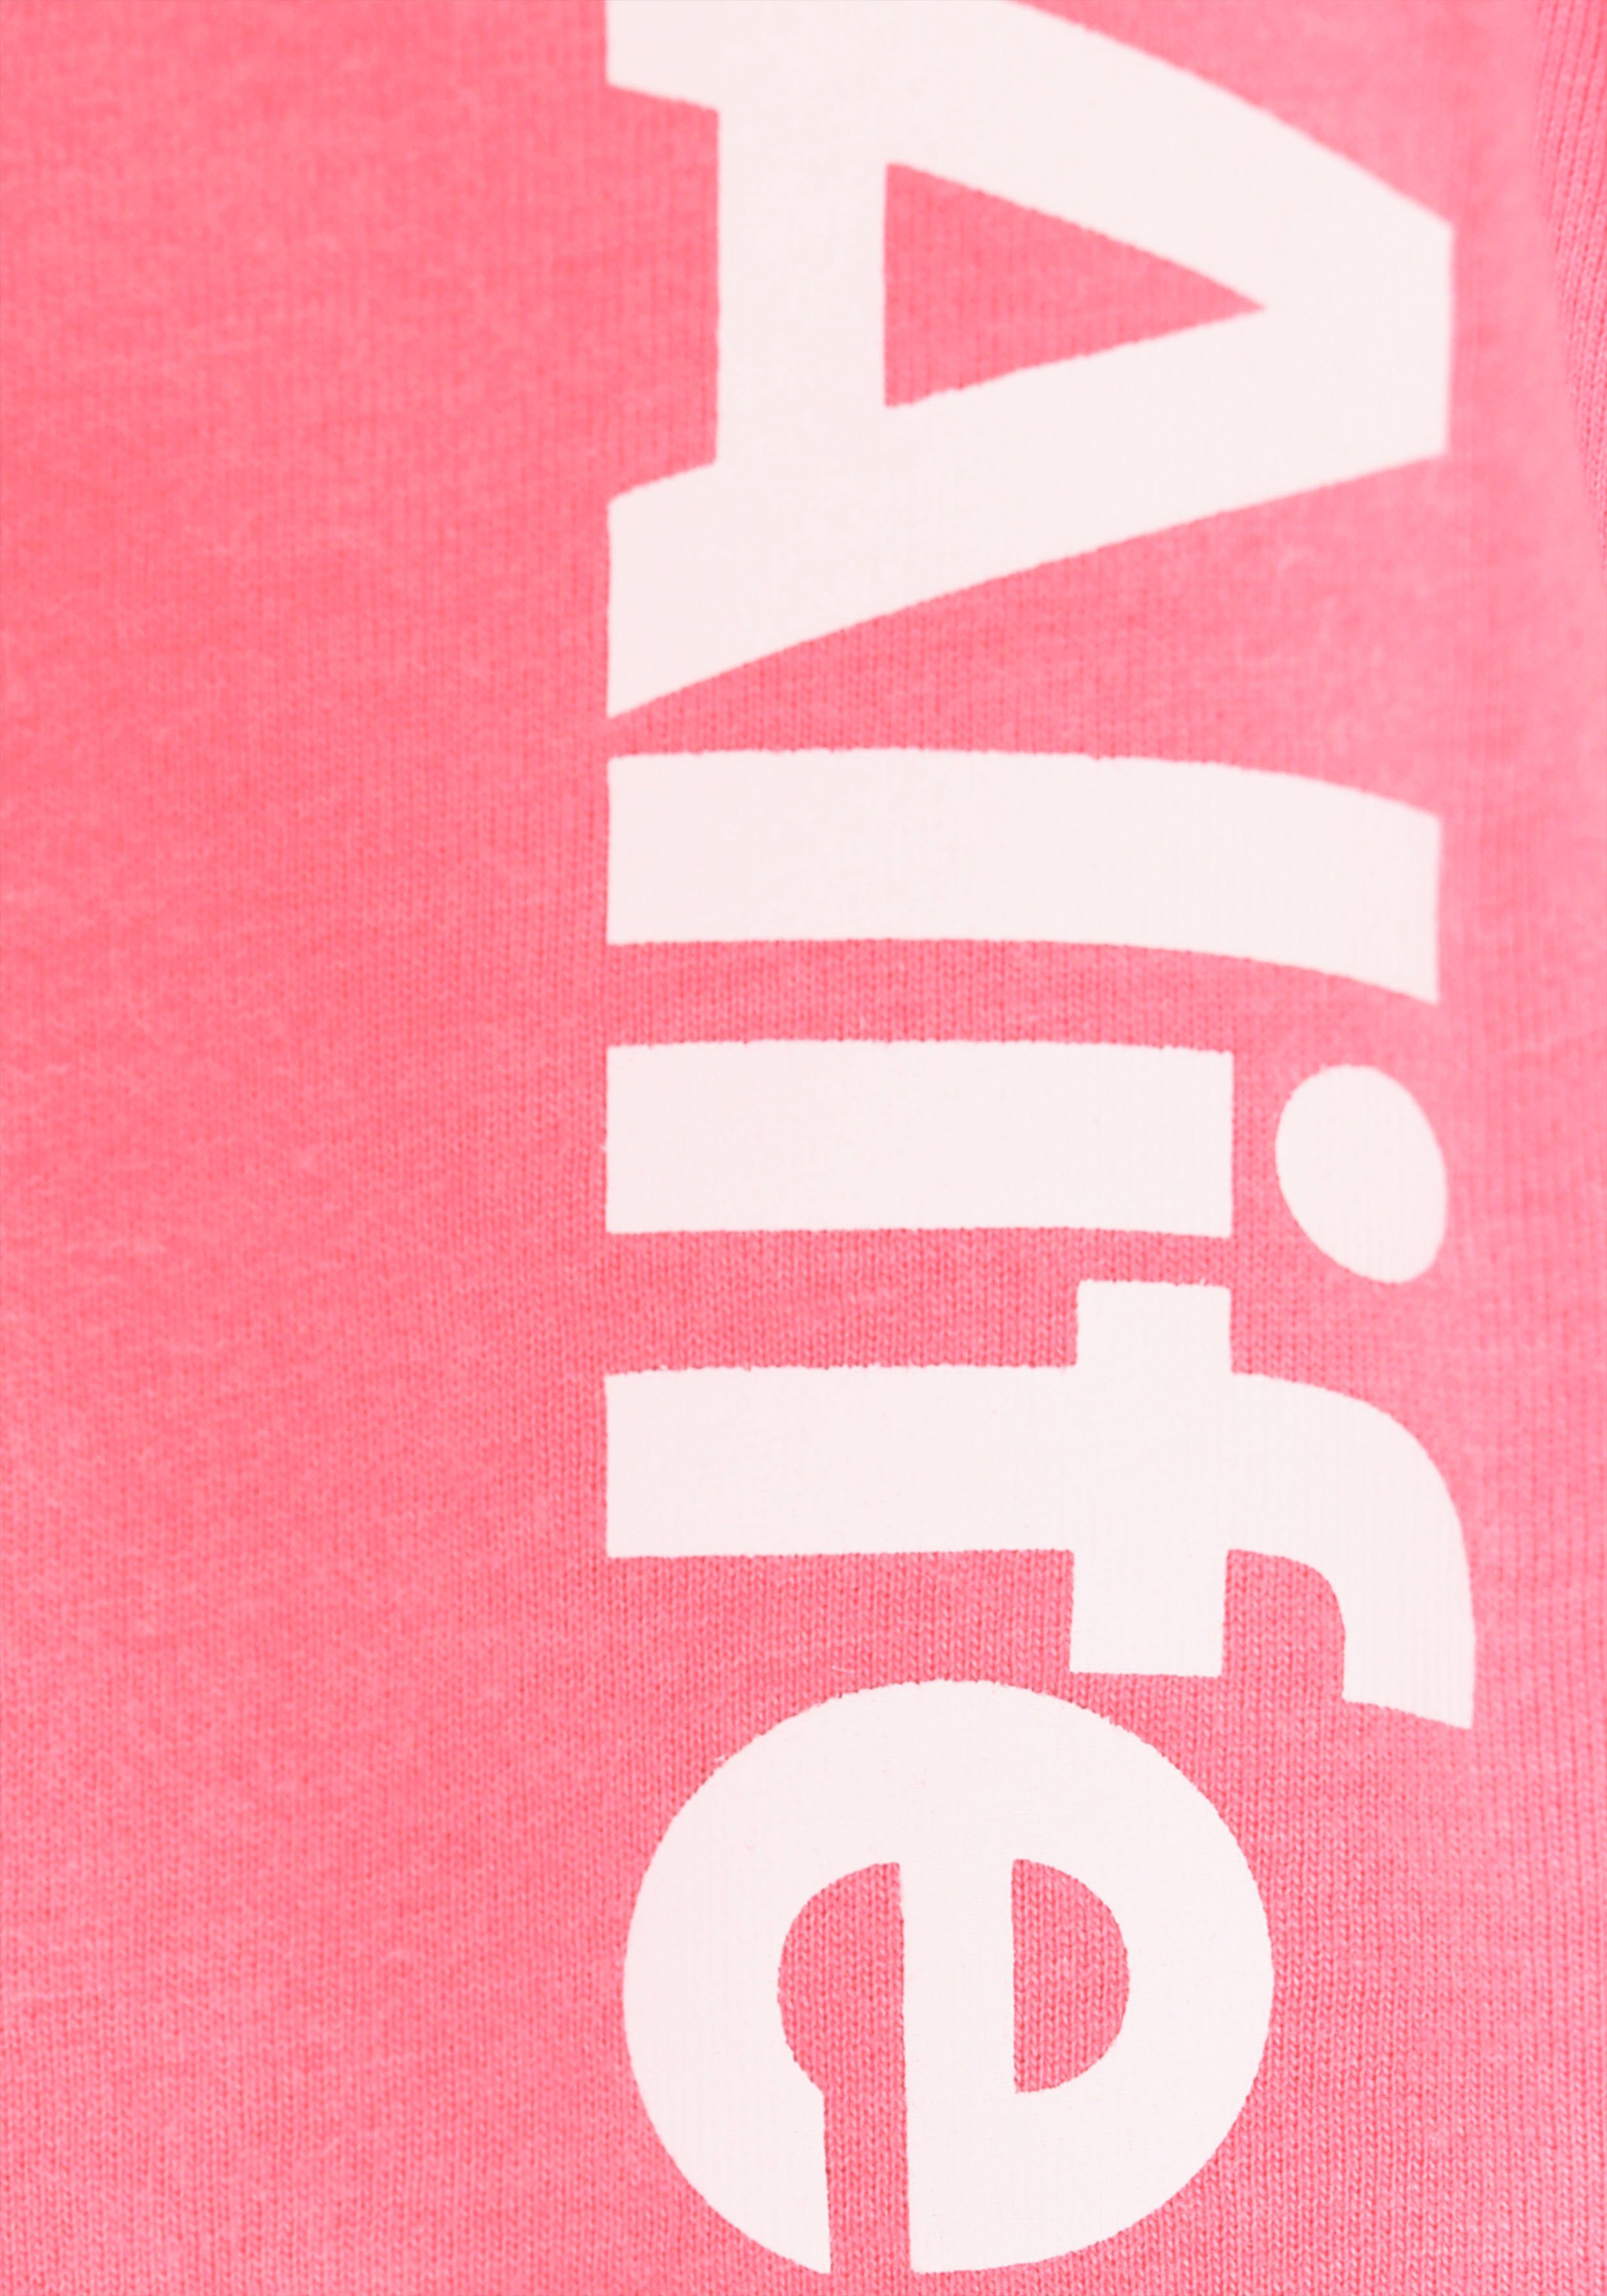 Alife & Kickin T-Shirt Kickin NEUE mit Alife MARKE! Logo Druck für Kids. &